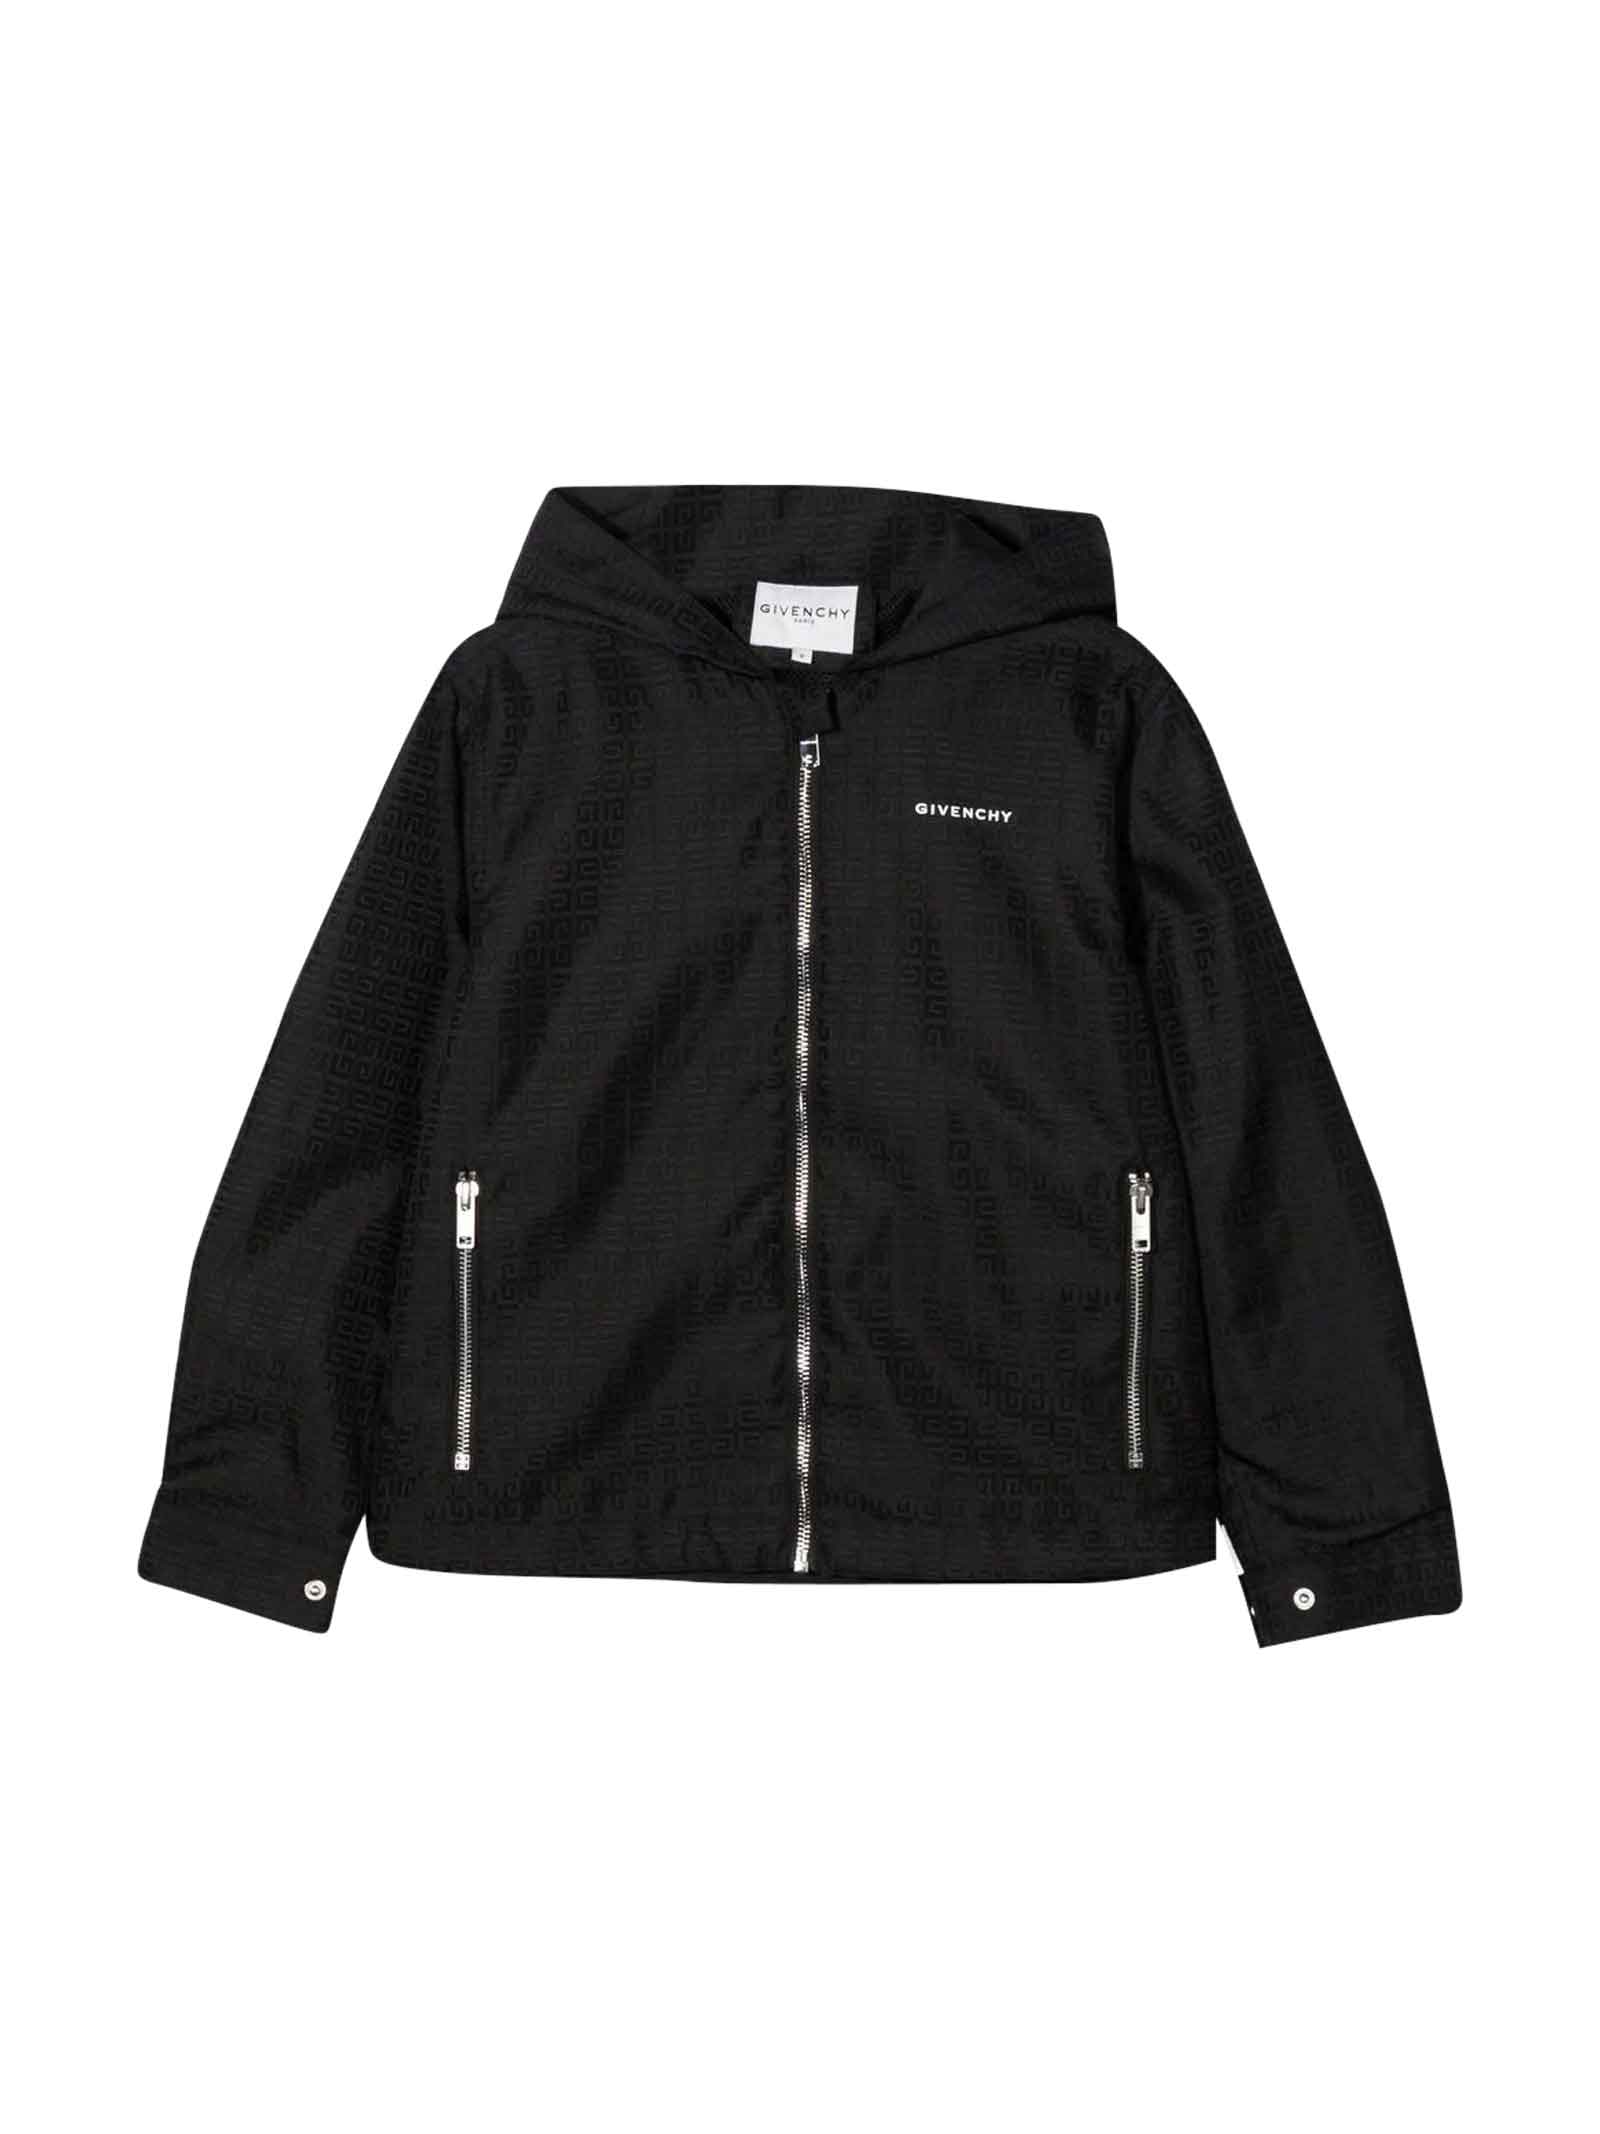 Givenchy Unisex Black Jacket